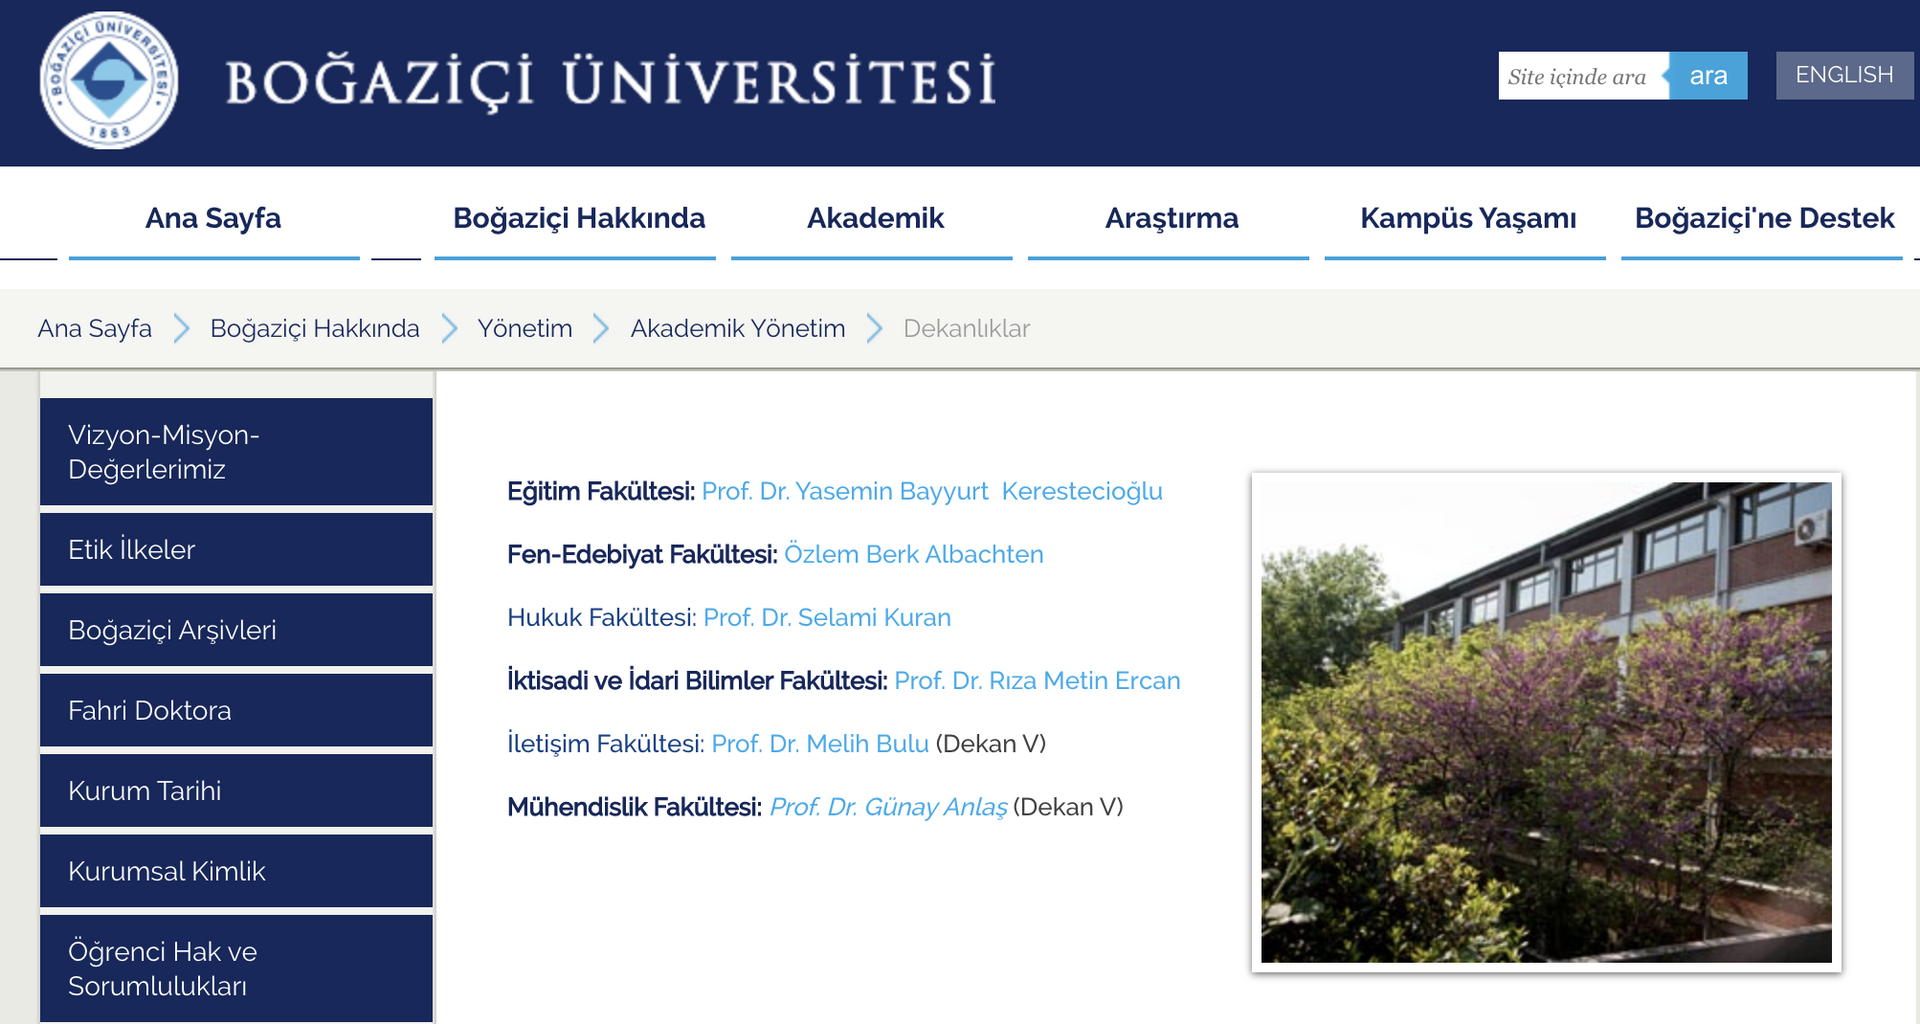 Prof. Bulu, Boğaziçi Üniversitesi'nde kurulan iletişim fakültesine vekaleten dekan olarak atandı - Sputnik Türkiye, 1920, 20.04.2021